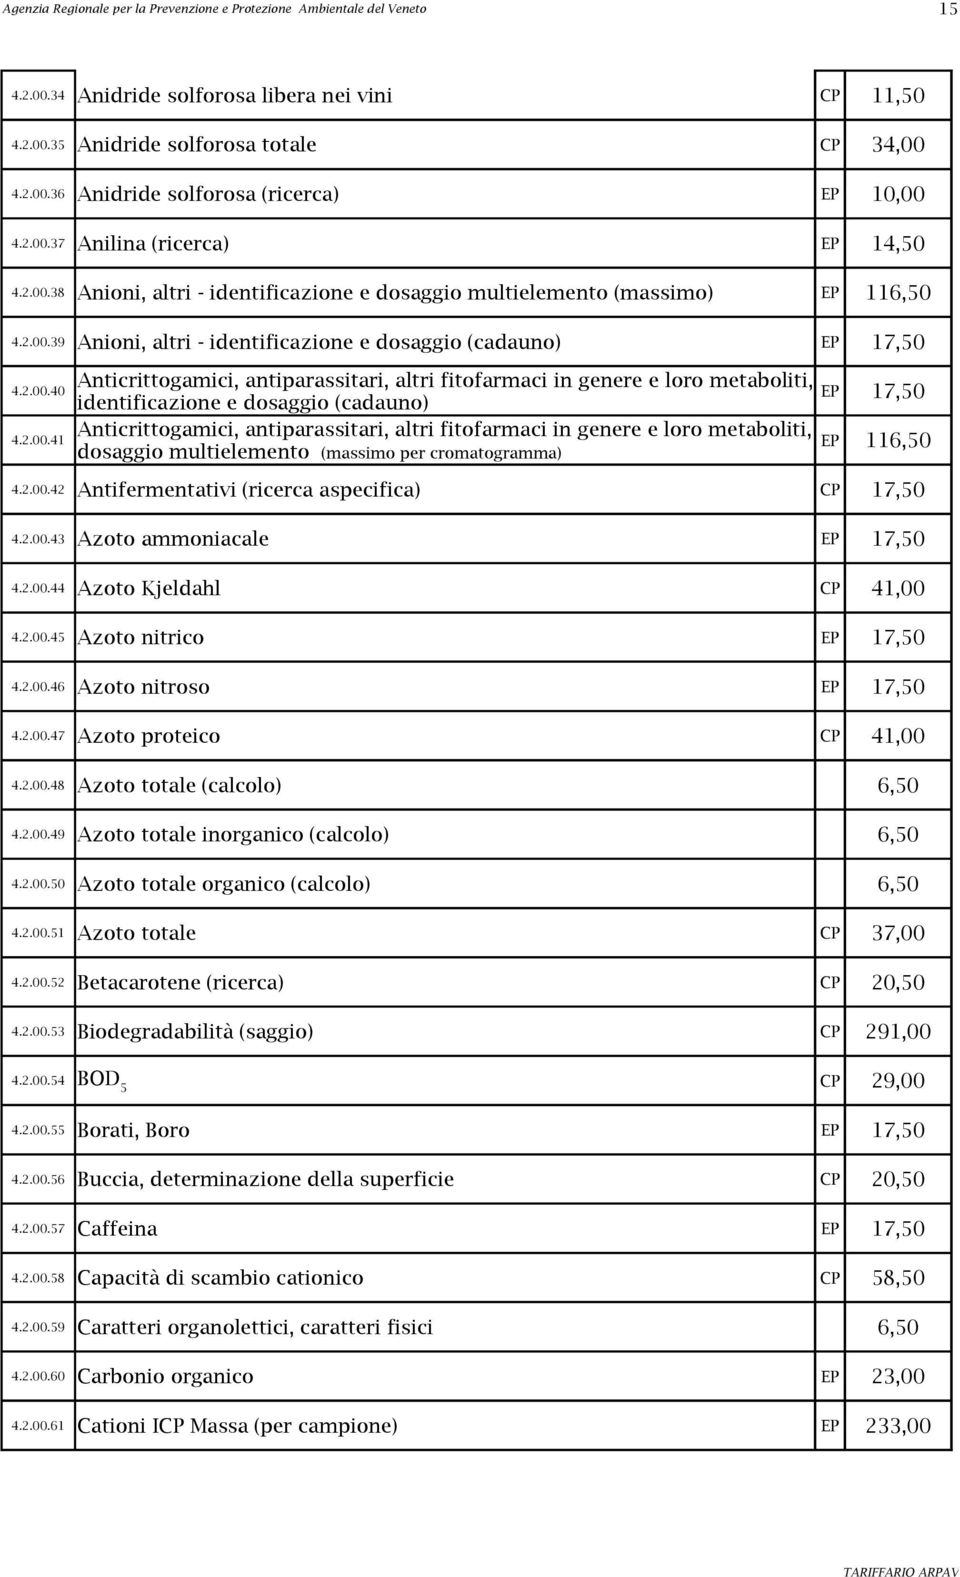 2.00.41 Anticrittogamici, antiparassitari, altri fitofarmaci in genere e loro metaboliti, EP dosaggio multielemento (massimo per cromatogramma) 116,50 4.2.00.42 Antifermentativi (ricerca aspecifica) CP 17,50 4.